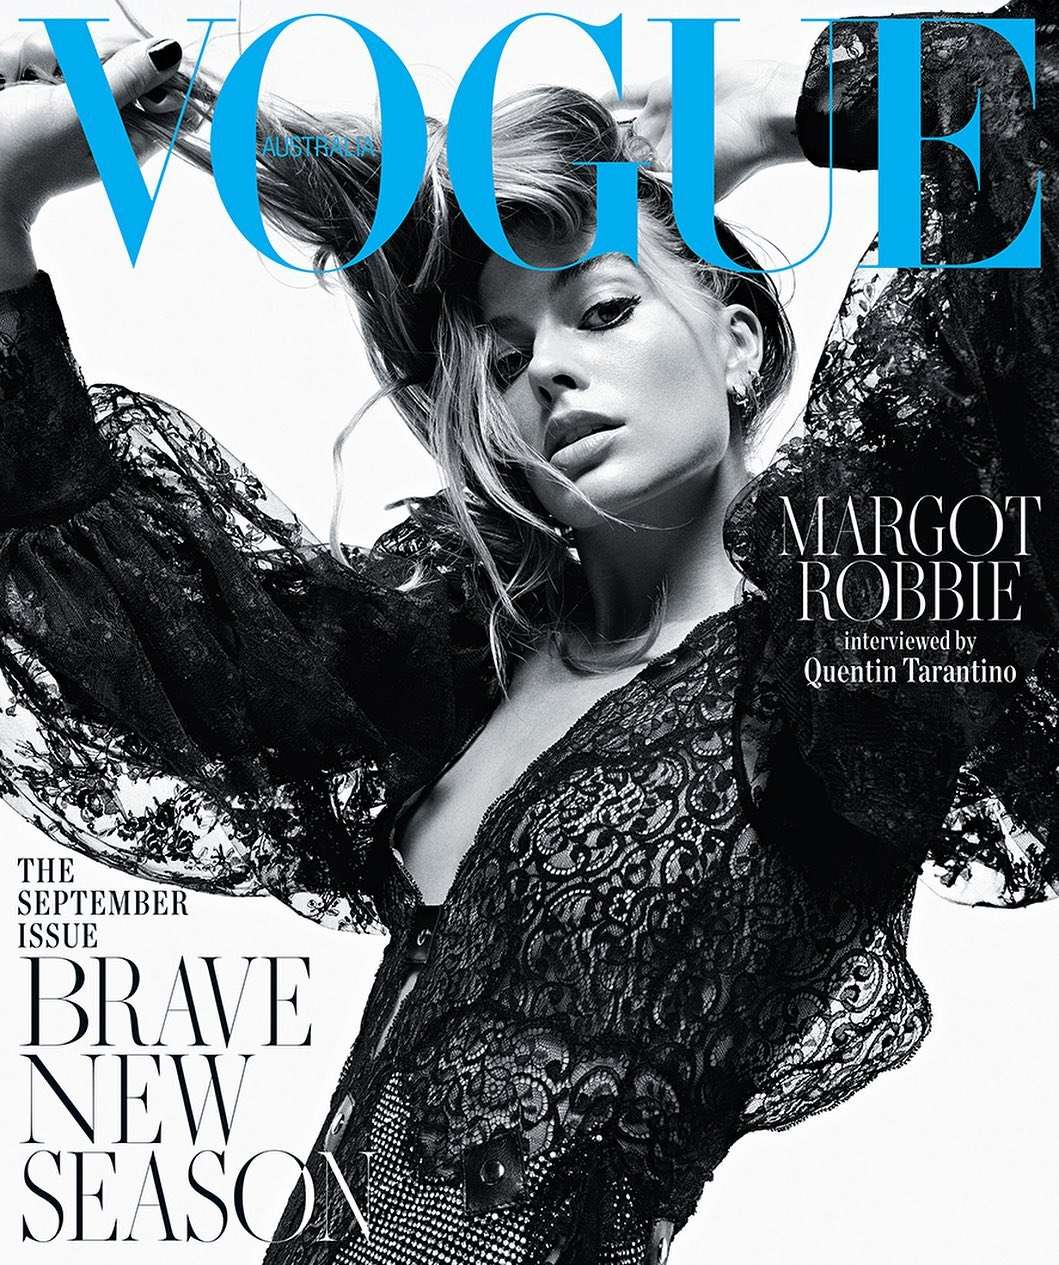 Марго Робби украсила обложку Vogue, но фанов напугал ее худощавый вид - фото 446831